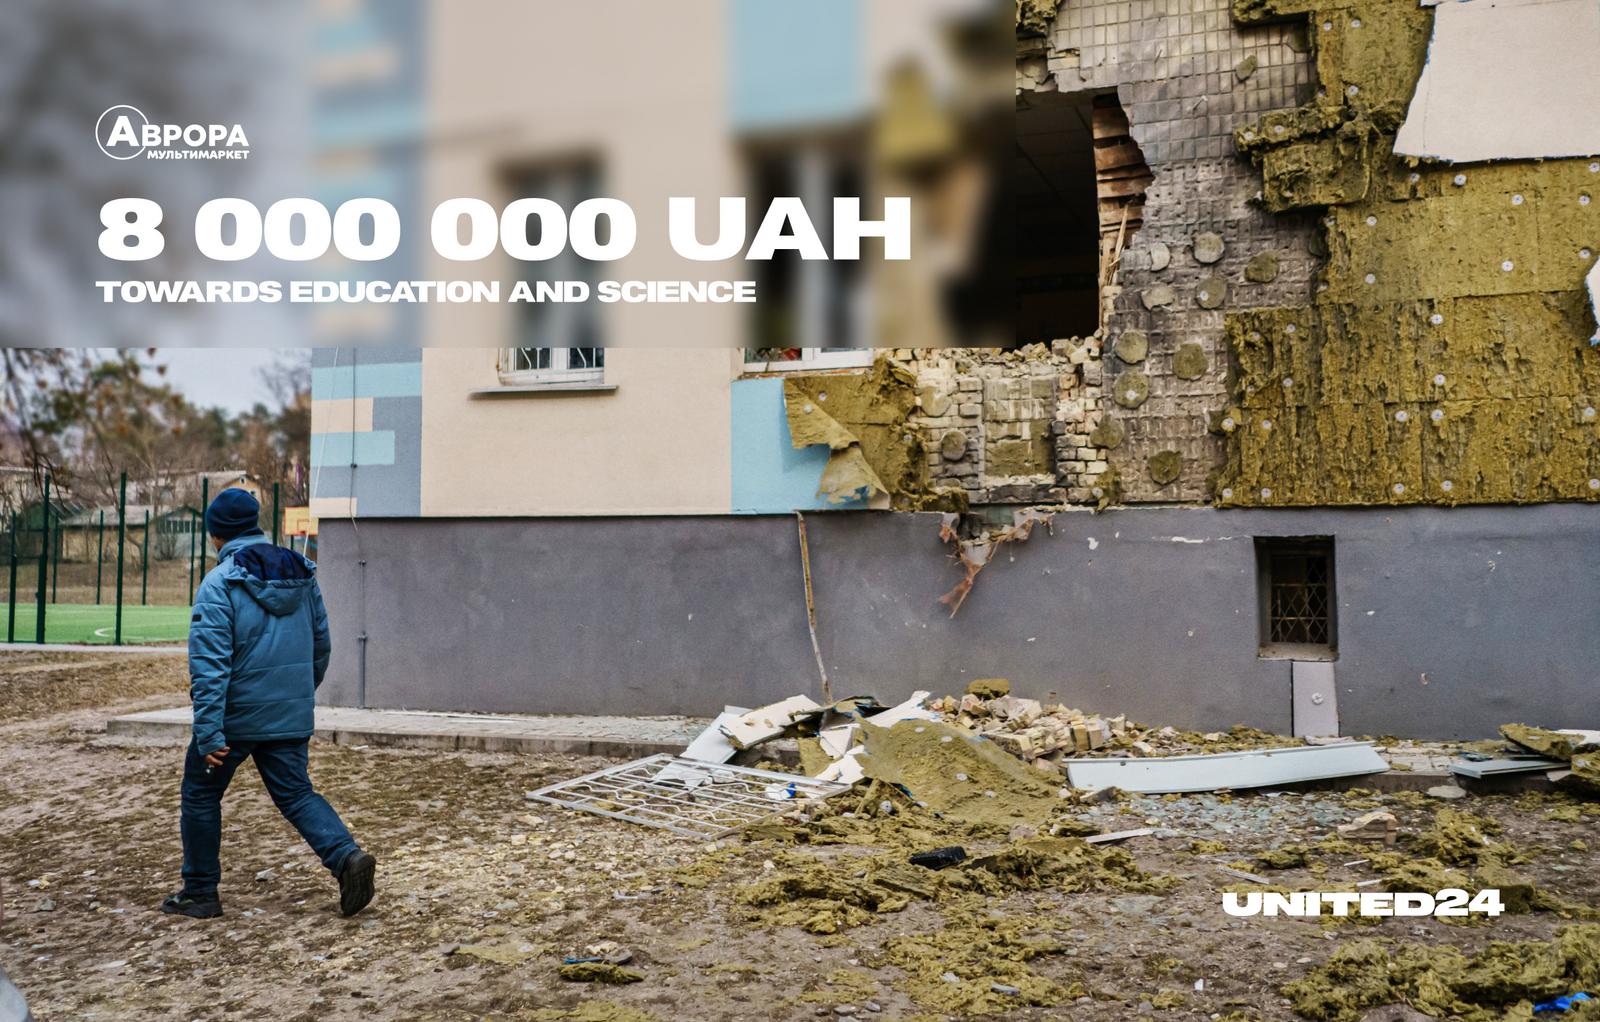 UAH 8,000,000 from Aurora multimarket chain to rebuild schools